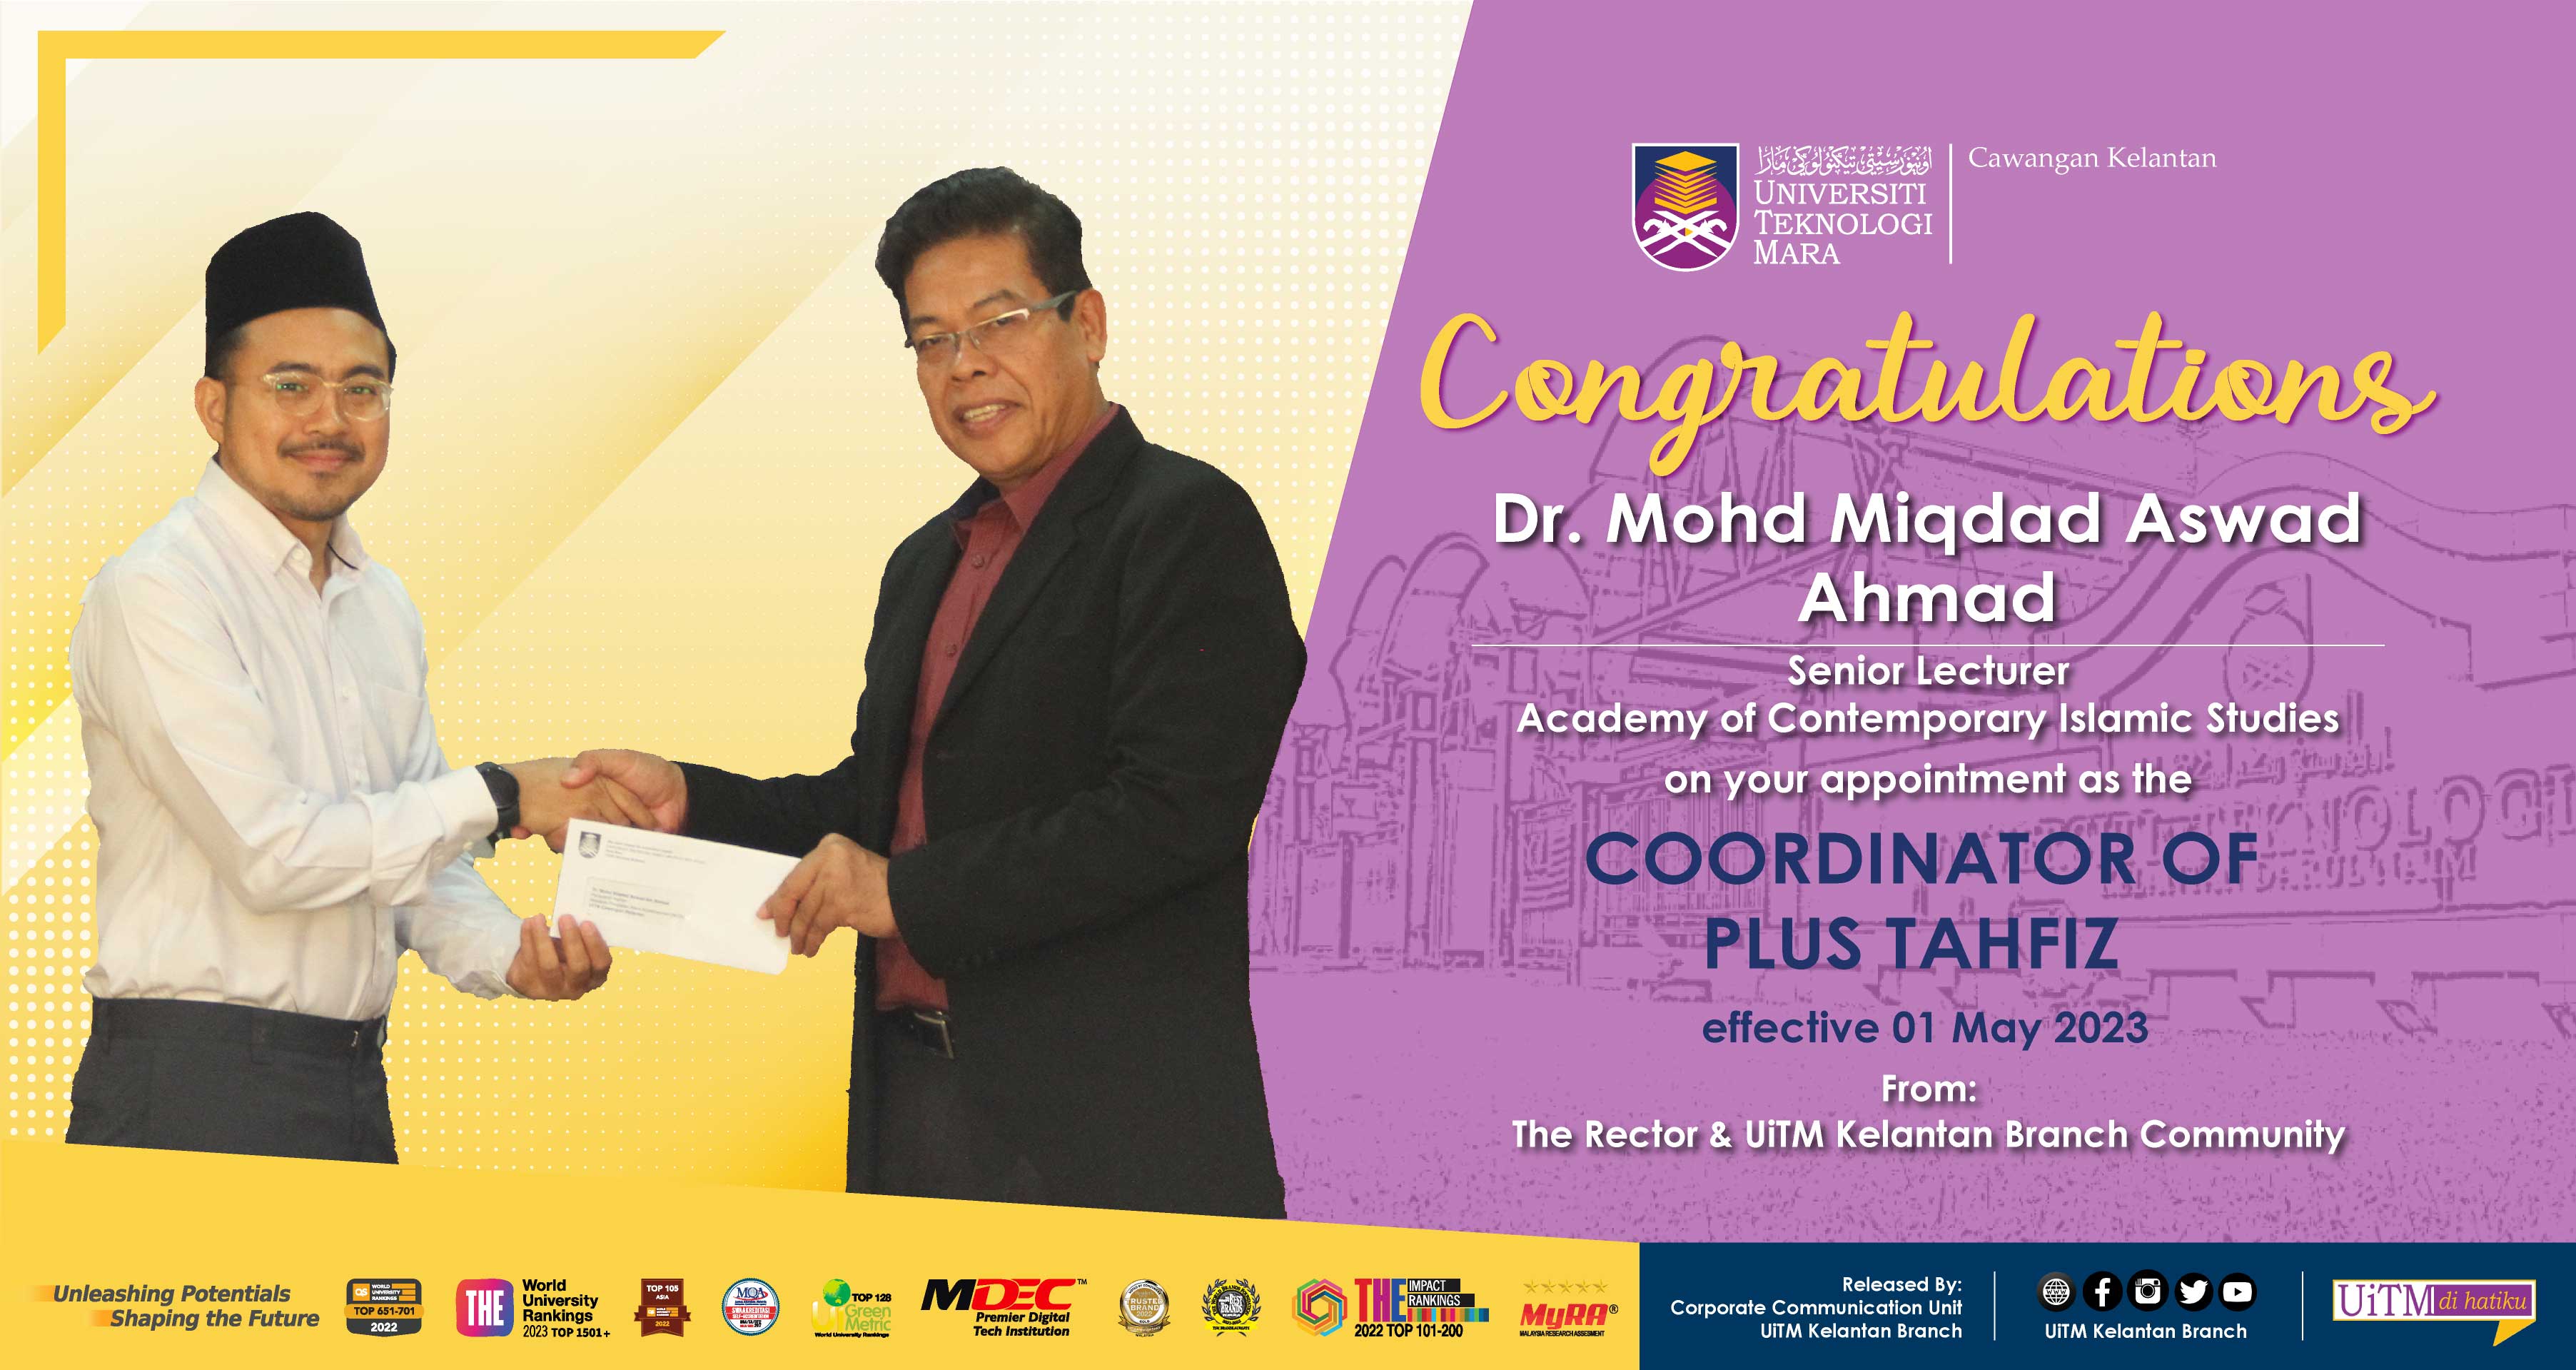 Congratulations!!! Dr. Mohd Miqdad Aswad Ahmad, Coordinator of Plus Tahfiz